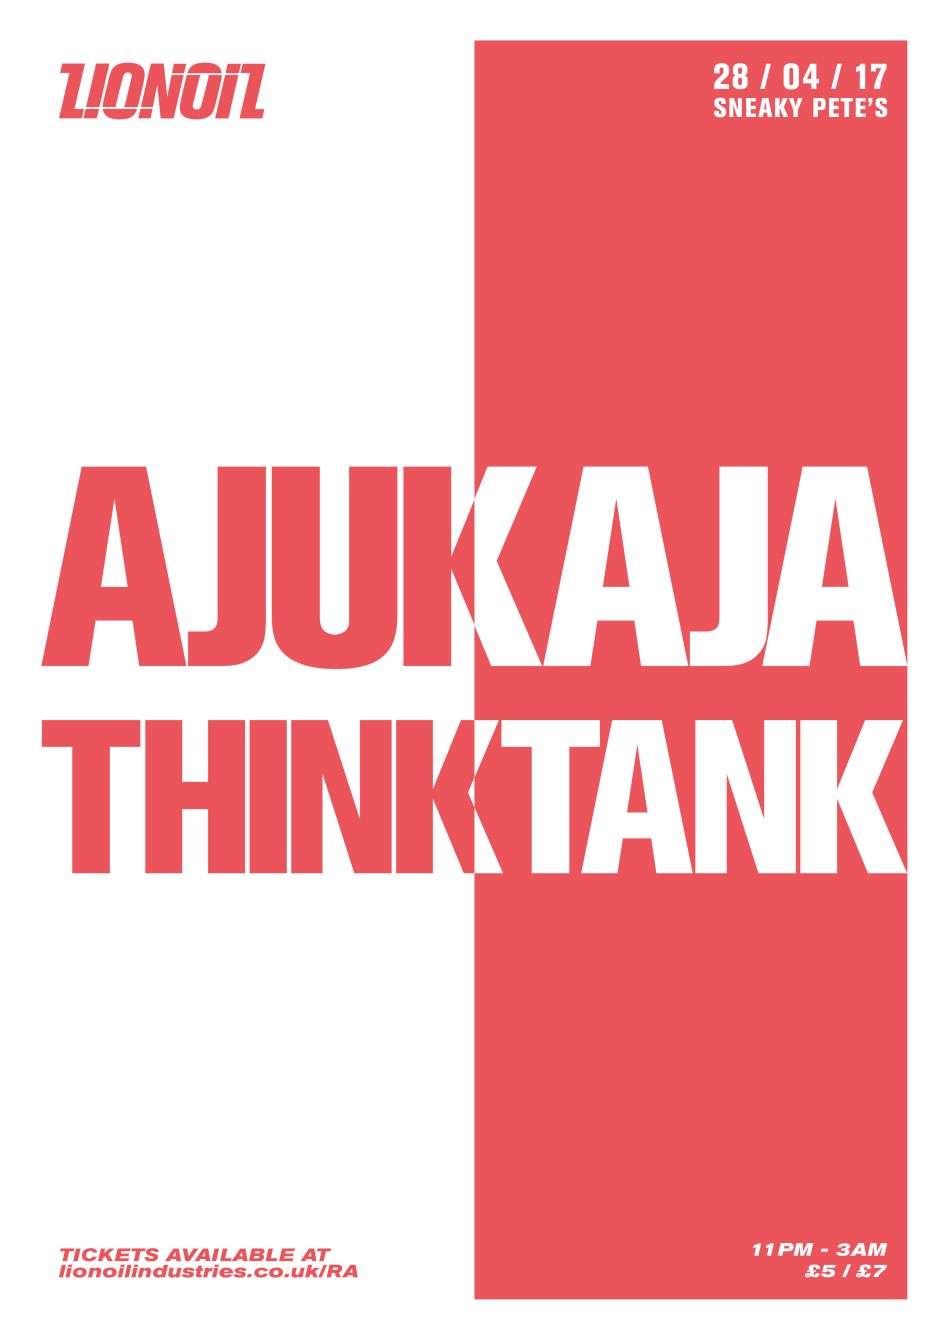 Lionoil: Ajukaja & Thinktank - フライヤー表